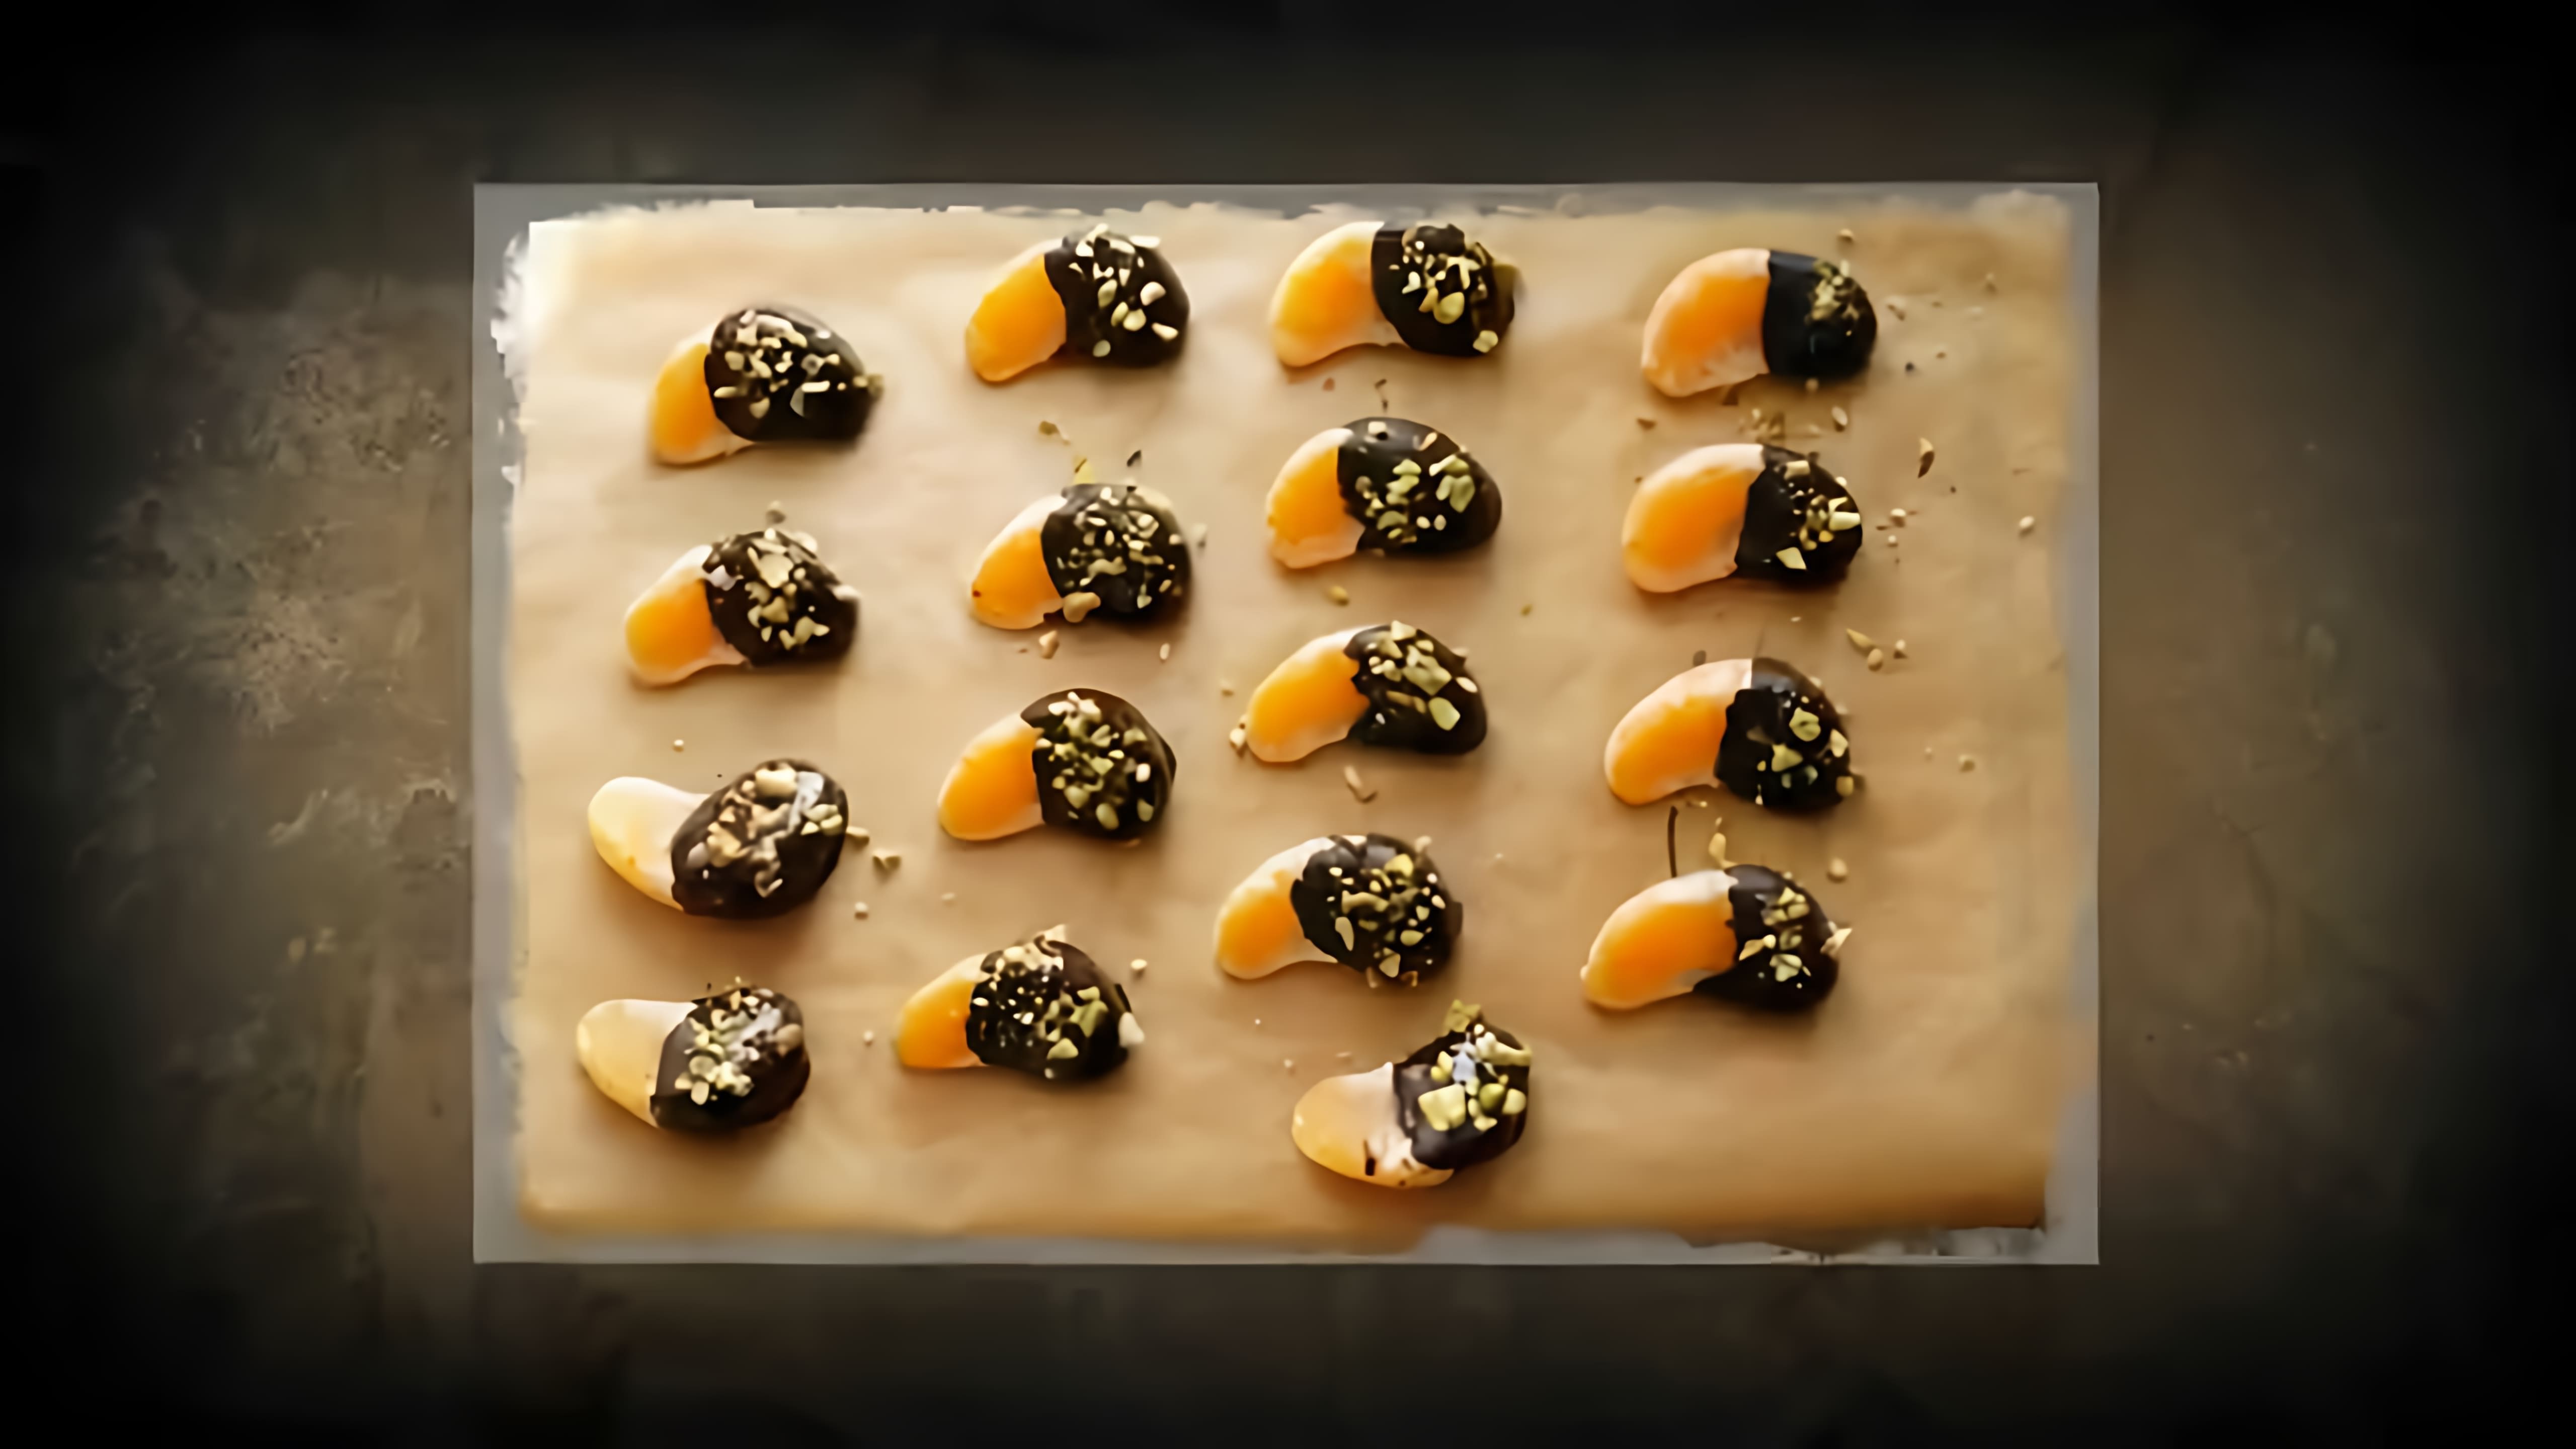 Вкусный десерт - мандариновые дольки в шоколаде - это видео-ролик, который демонстрирует процесс приготовления вкусного и оригинального десерта